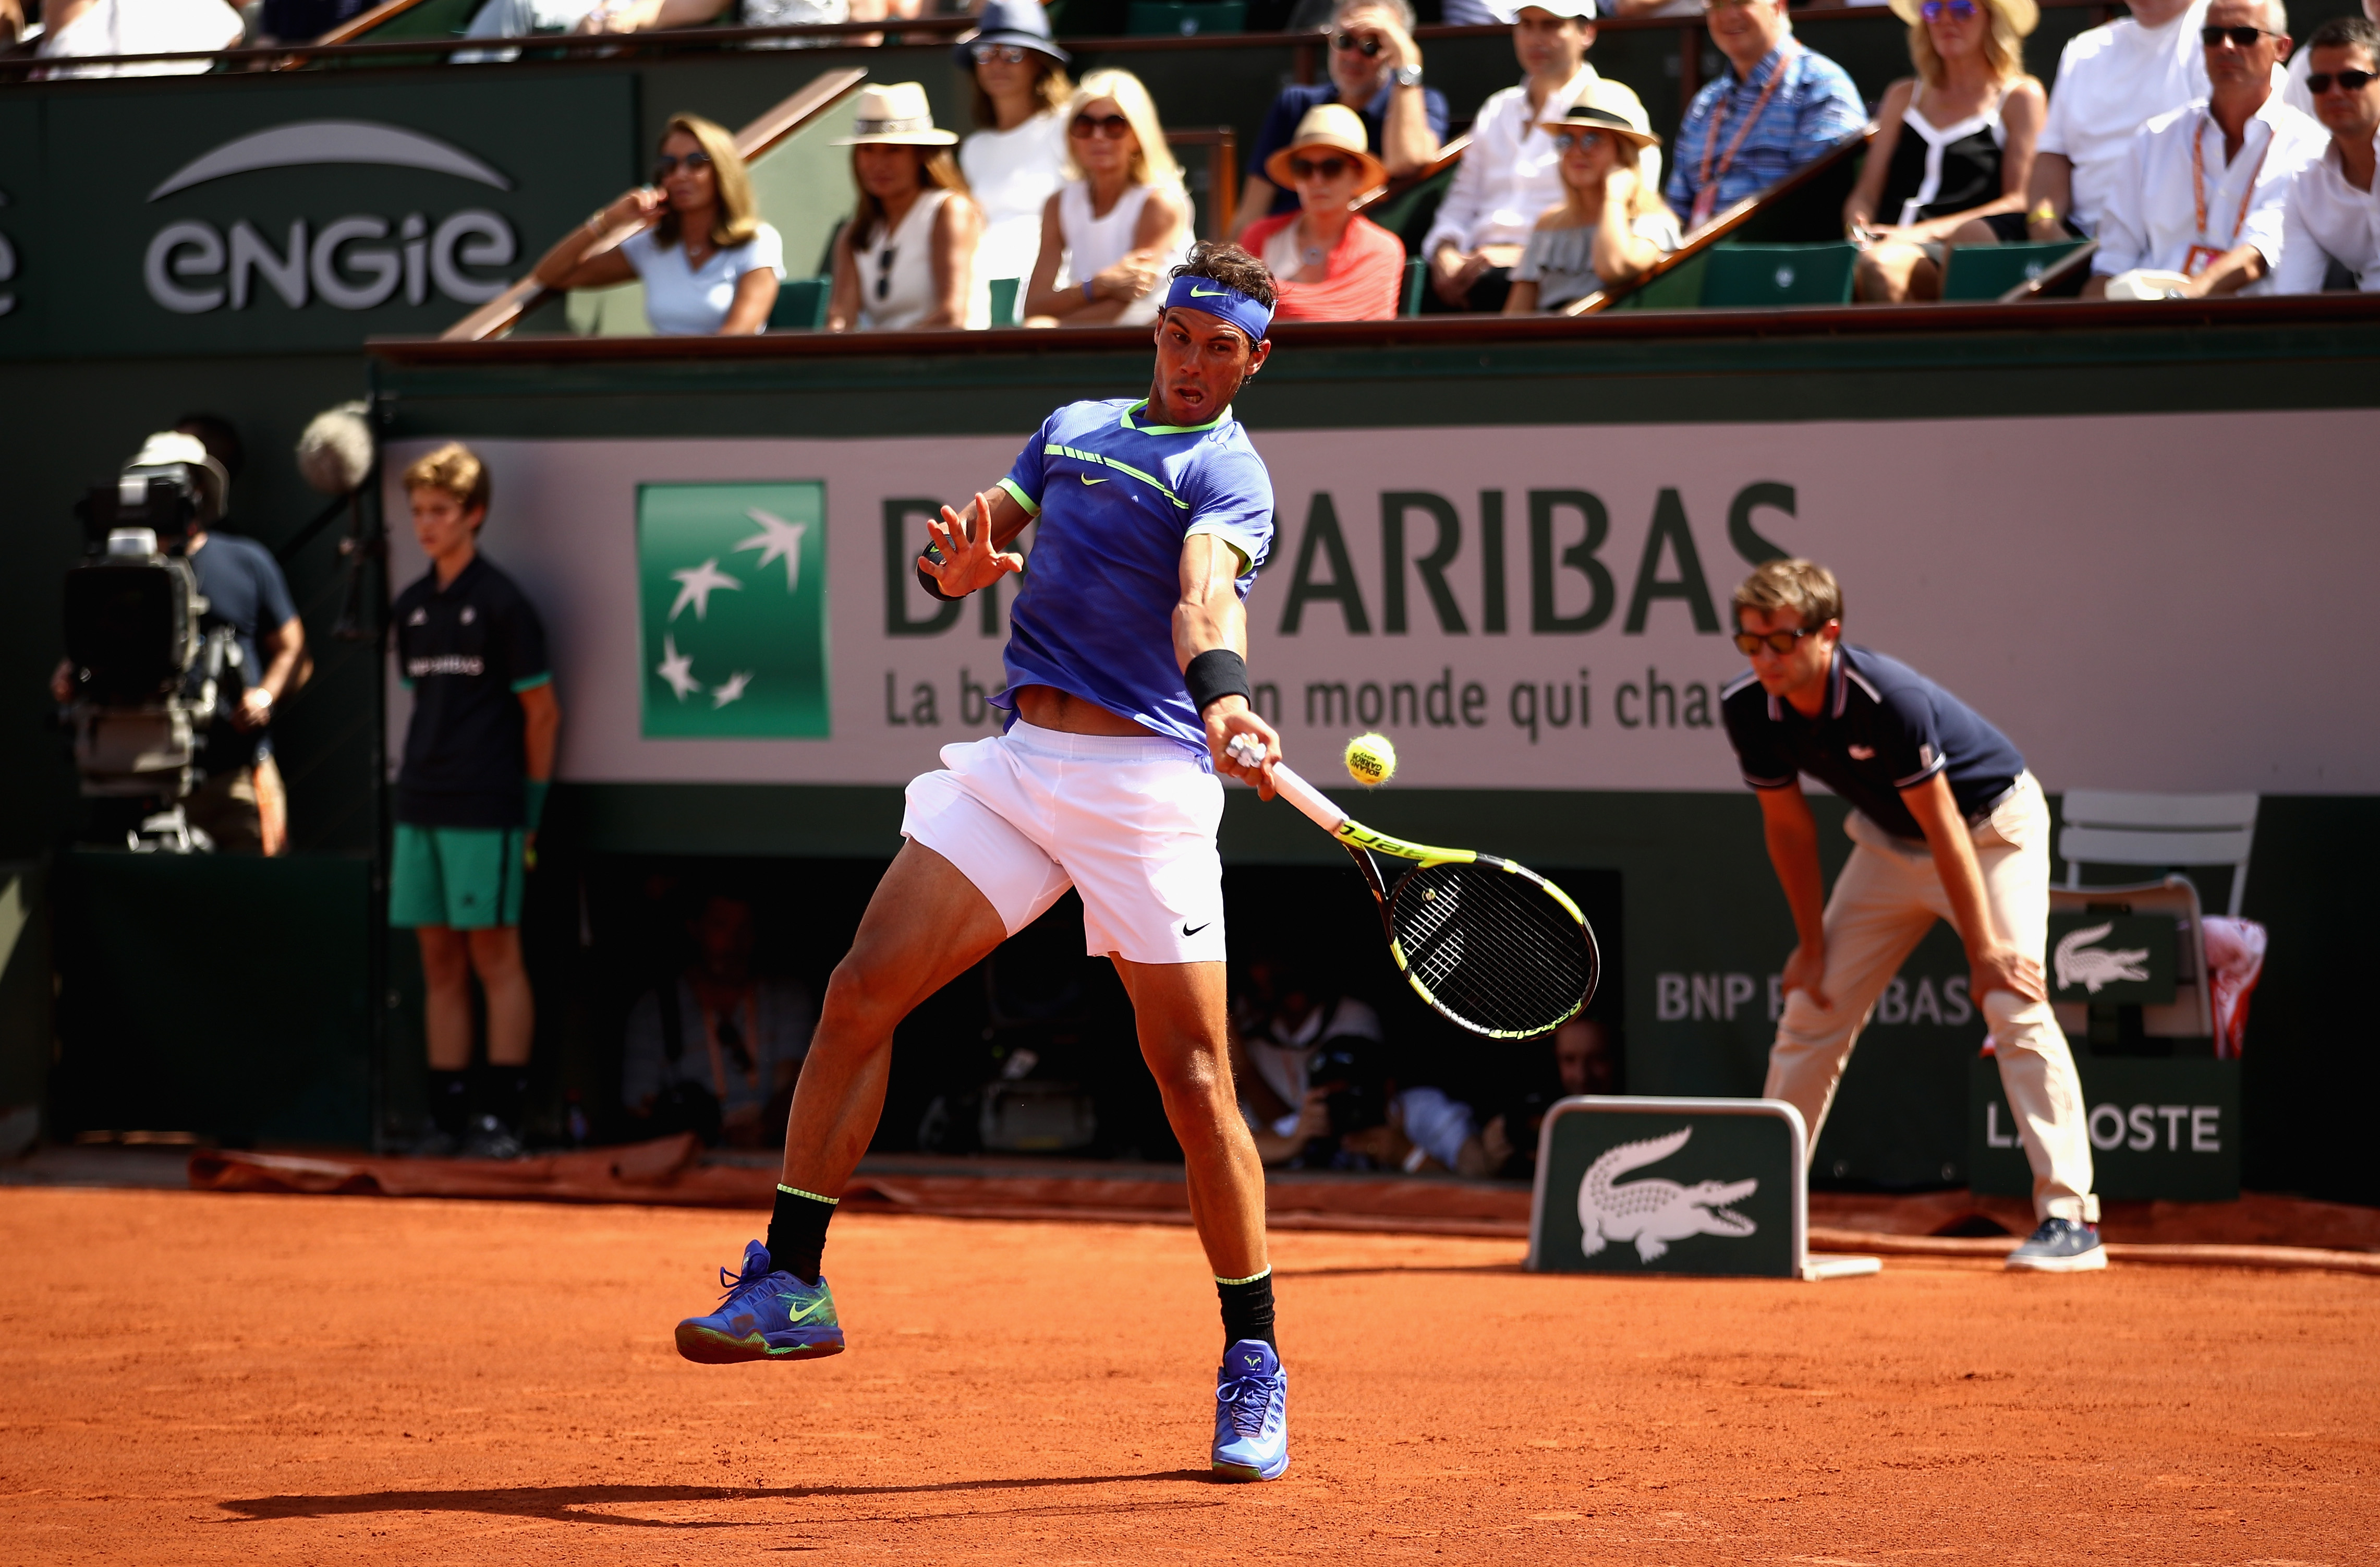 French Open | Rafael Nadal, Novak Djokovic, Stan Wawrinka qualify for round 2